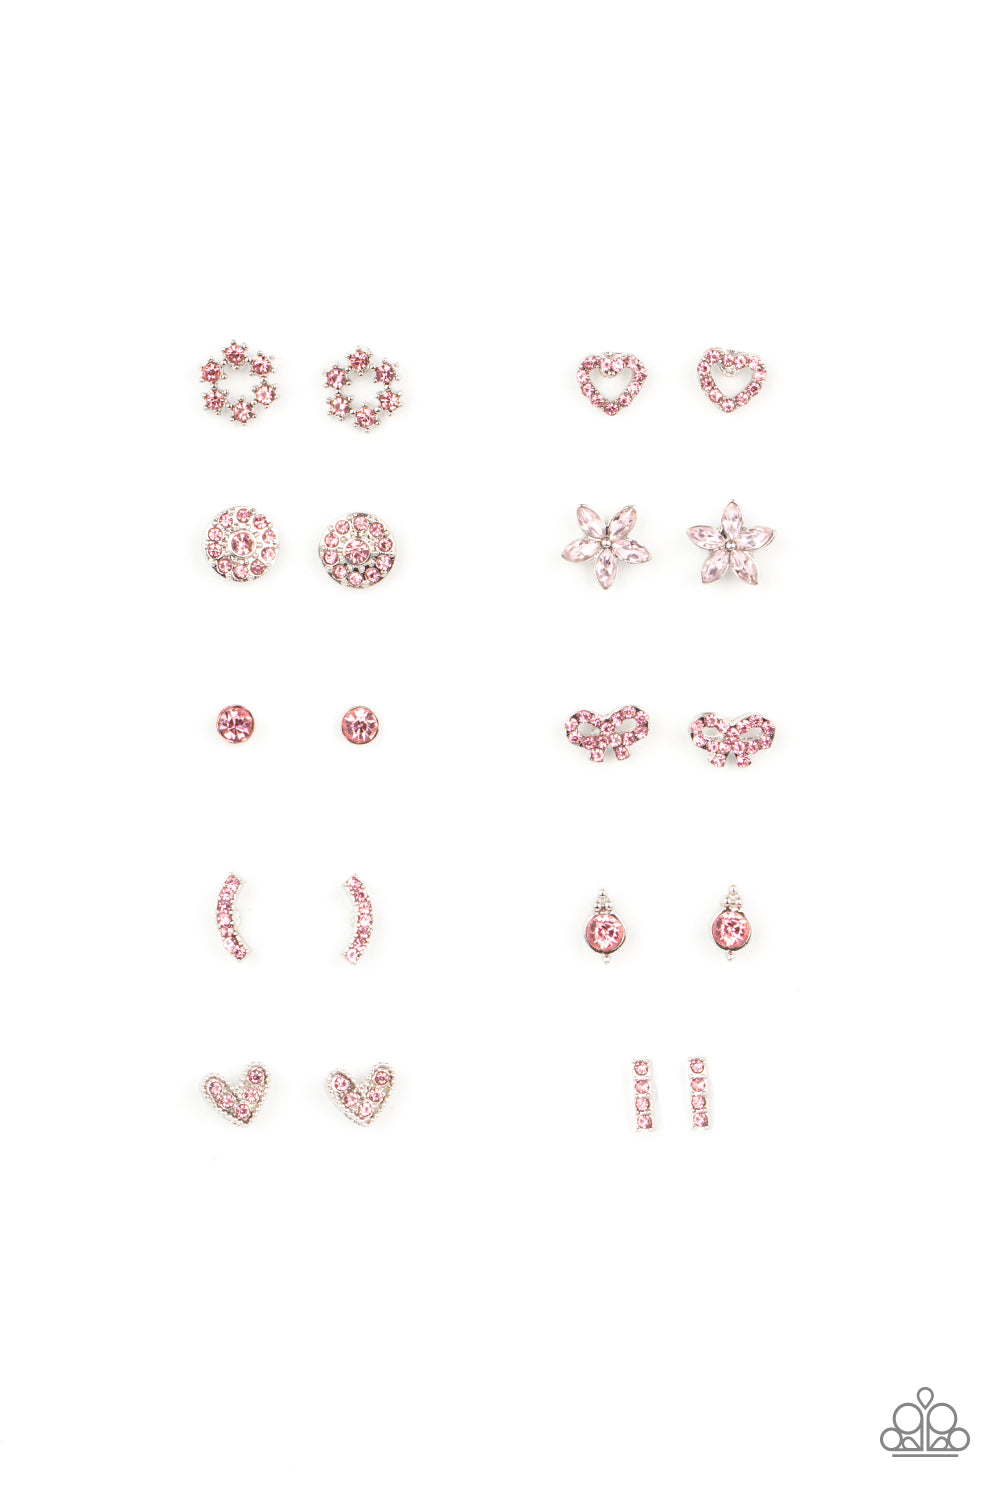 Paparazzi ♥ Starlet Shimmer Earring Kit P5SS-MTXX-340XX ♥ Starlet Shimmer  Earrings